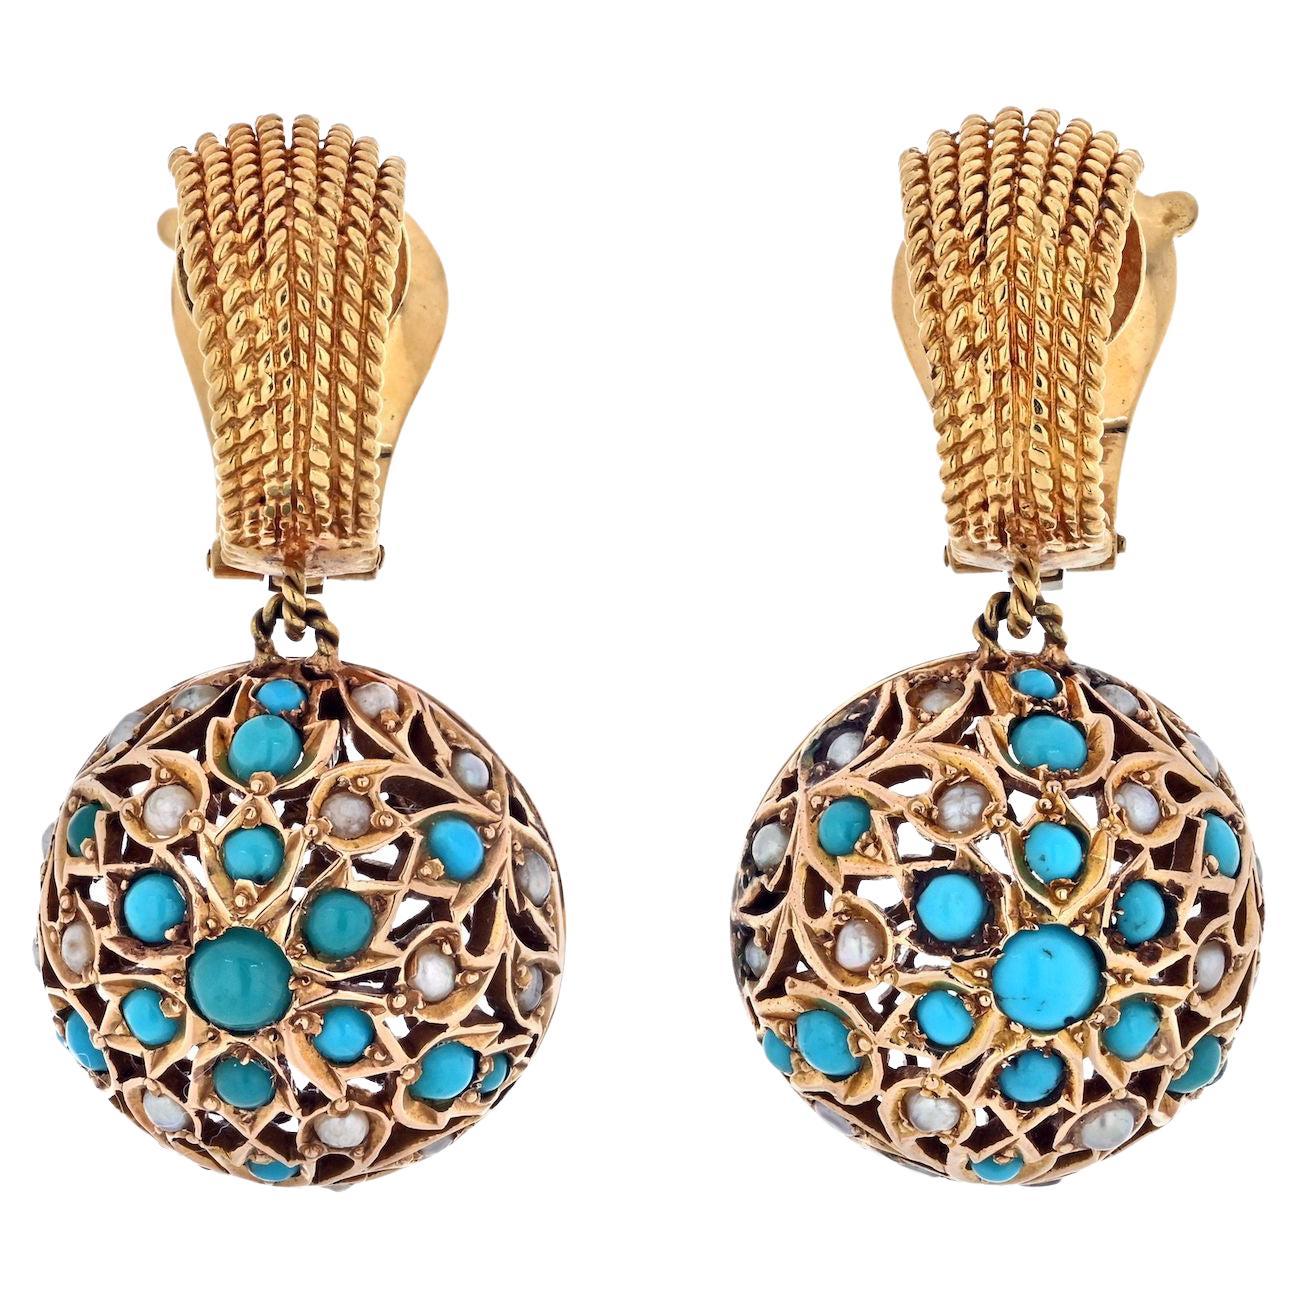 Van Cleef & Arpels pendants d'oreilles en or jaune 18 carats avec perles turquoises des années 1960